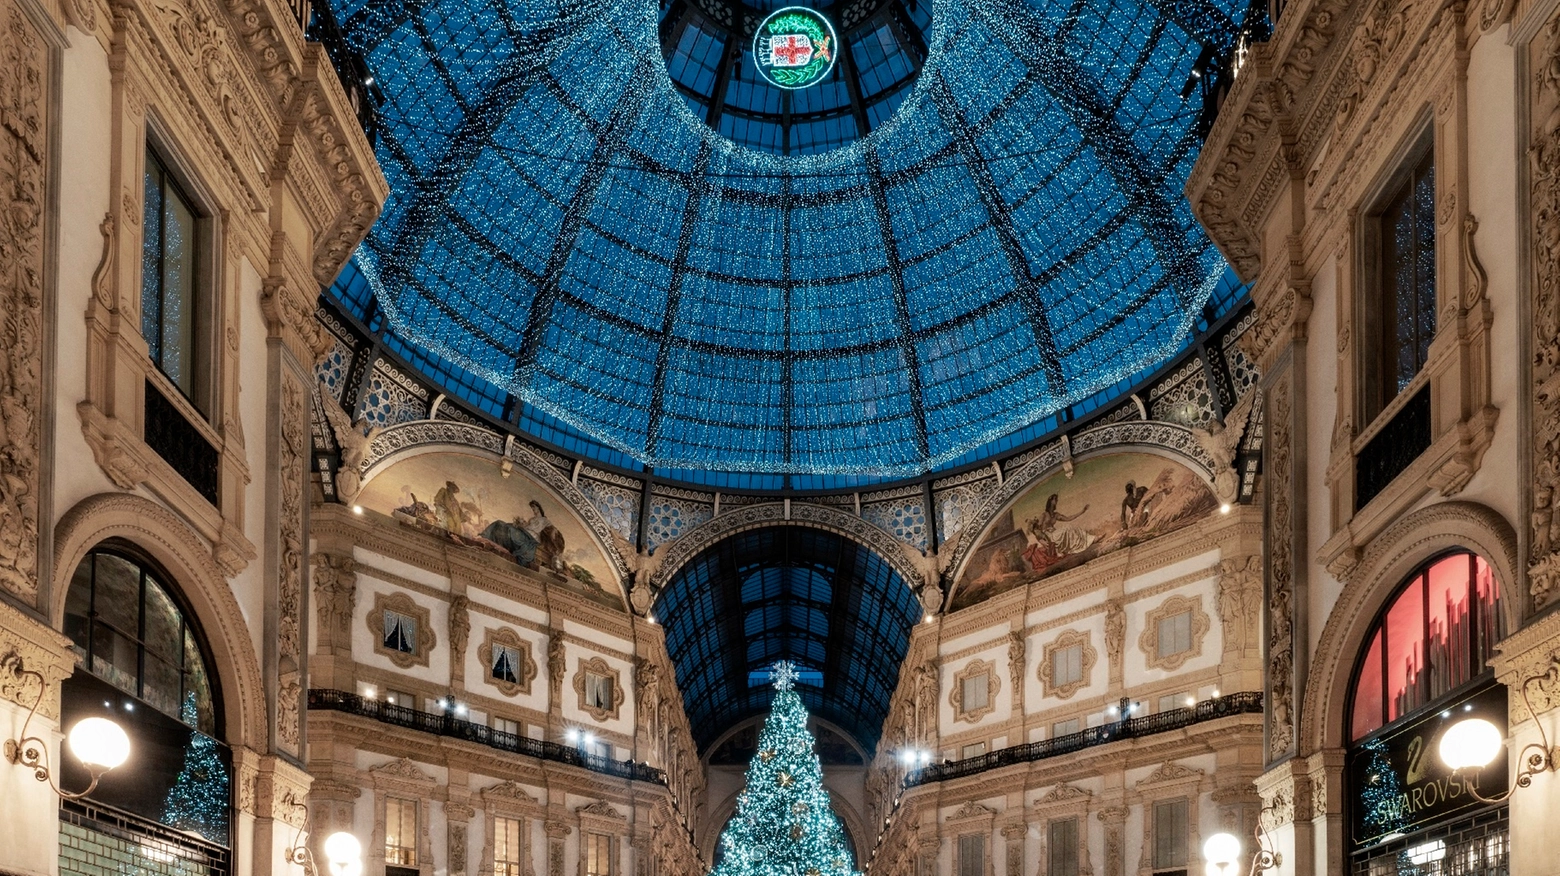 L'albero di Natale di Swarovski a Milano